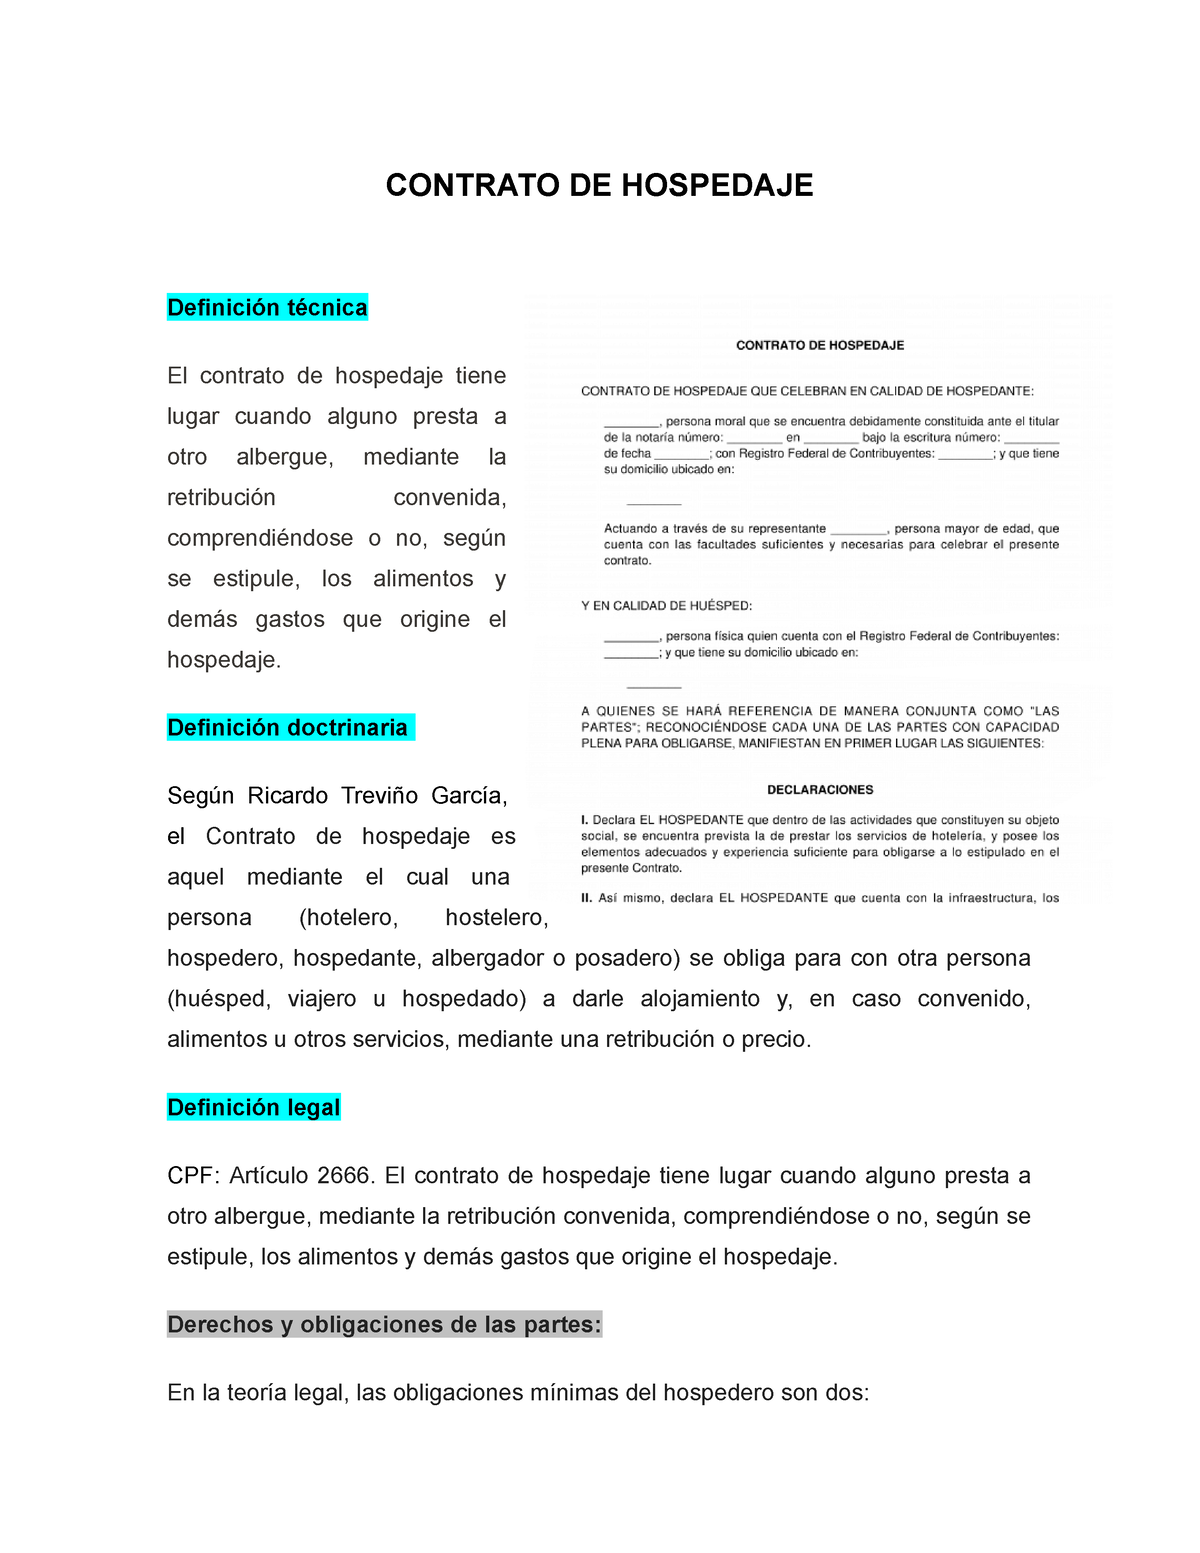 Contrato De Hospedaje Contrato De Hospedaje Definición Técnica El Contrato De Hospedaje Tiene 8341